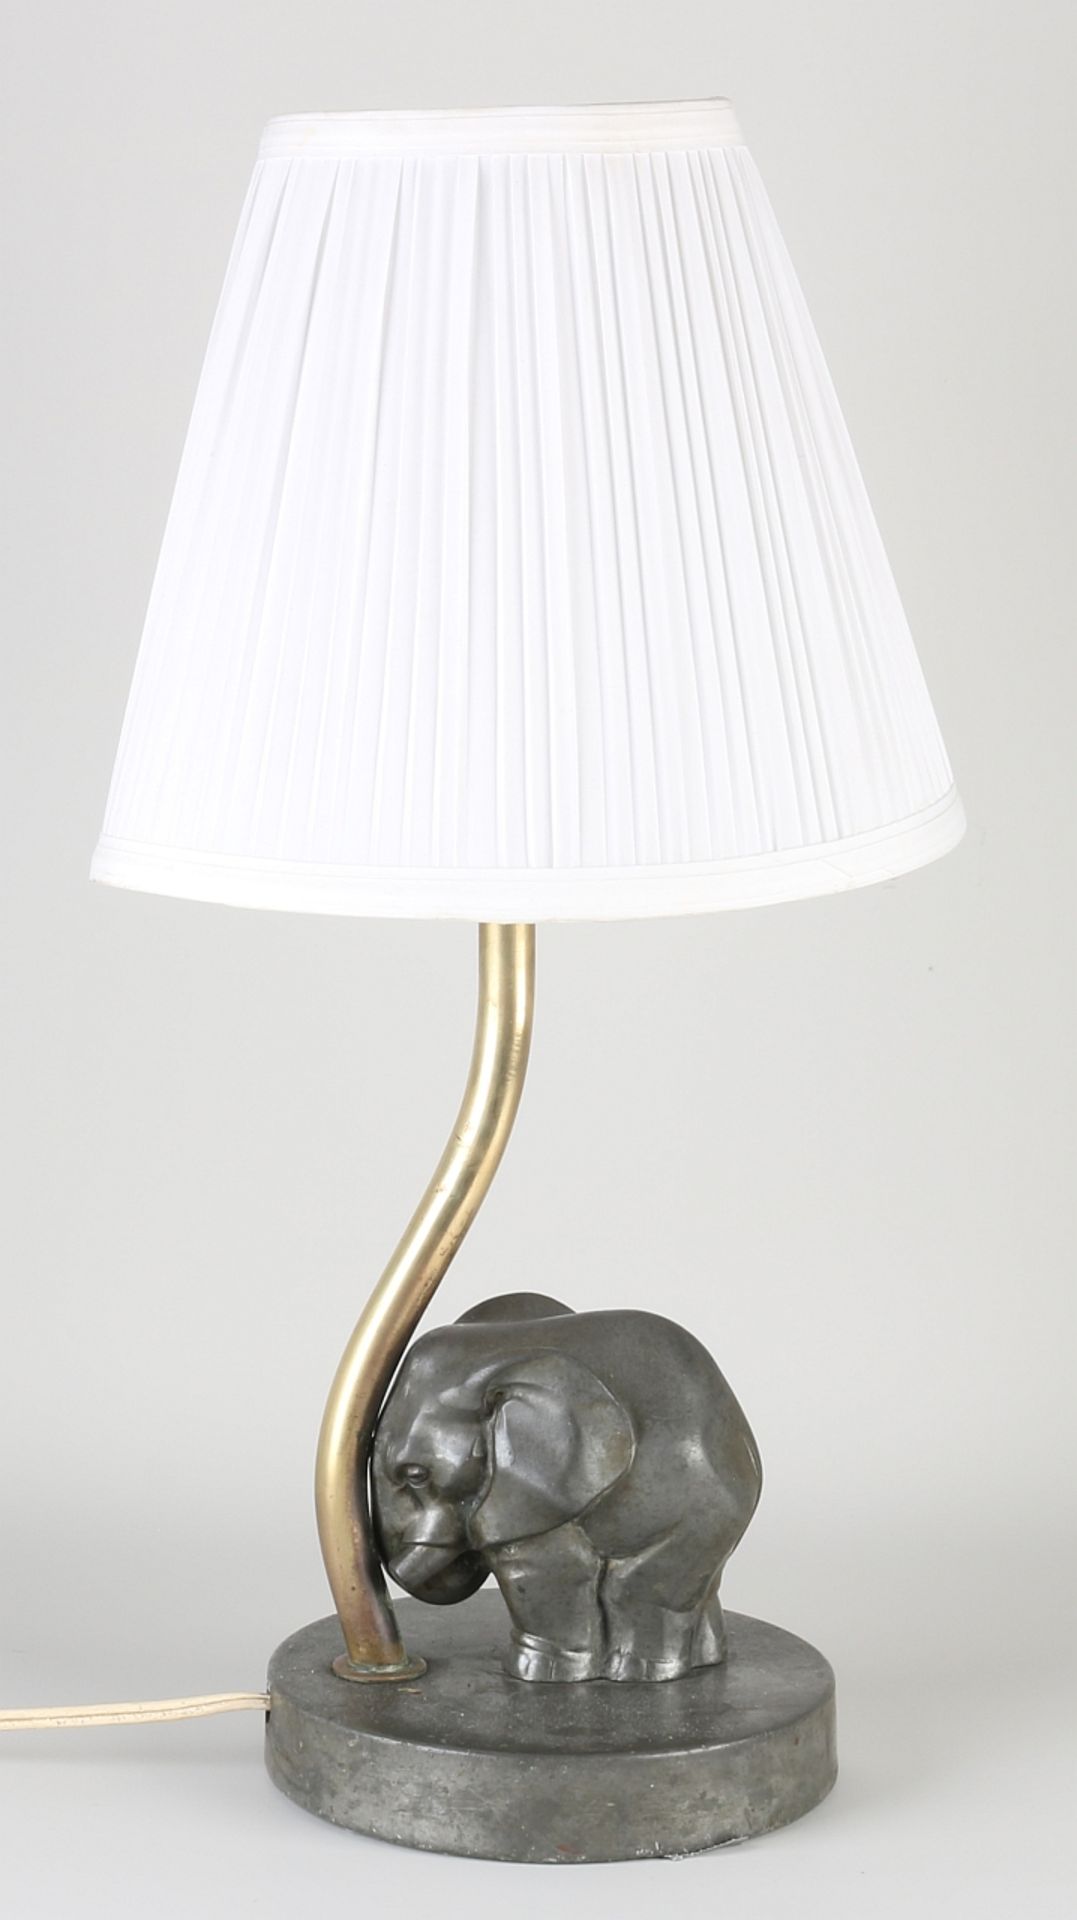 Antique George Nilsson lamp